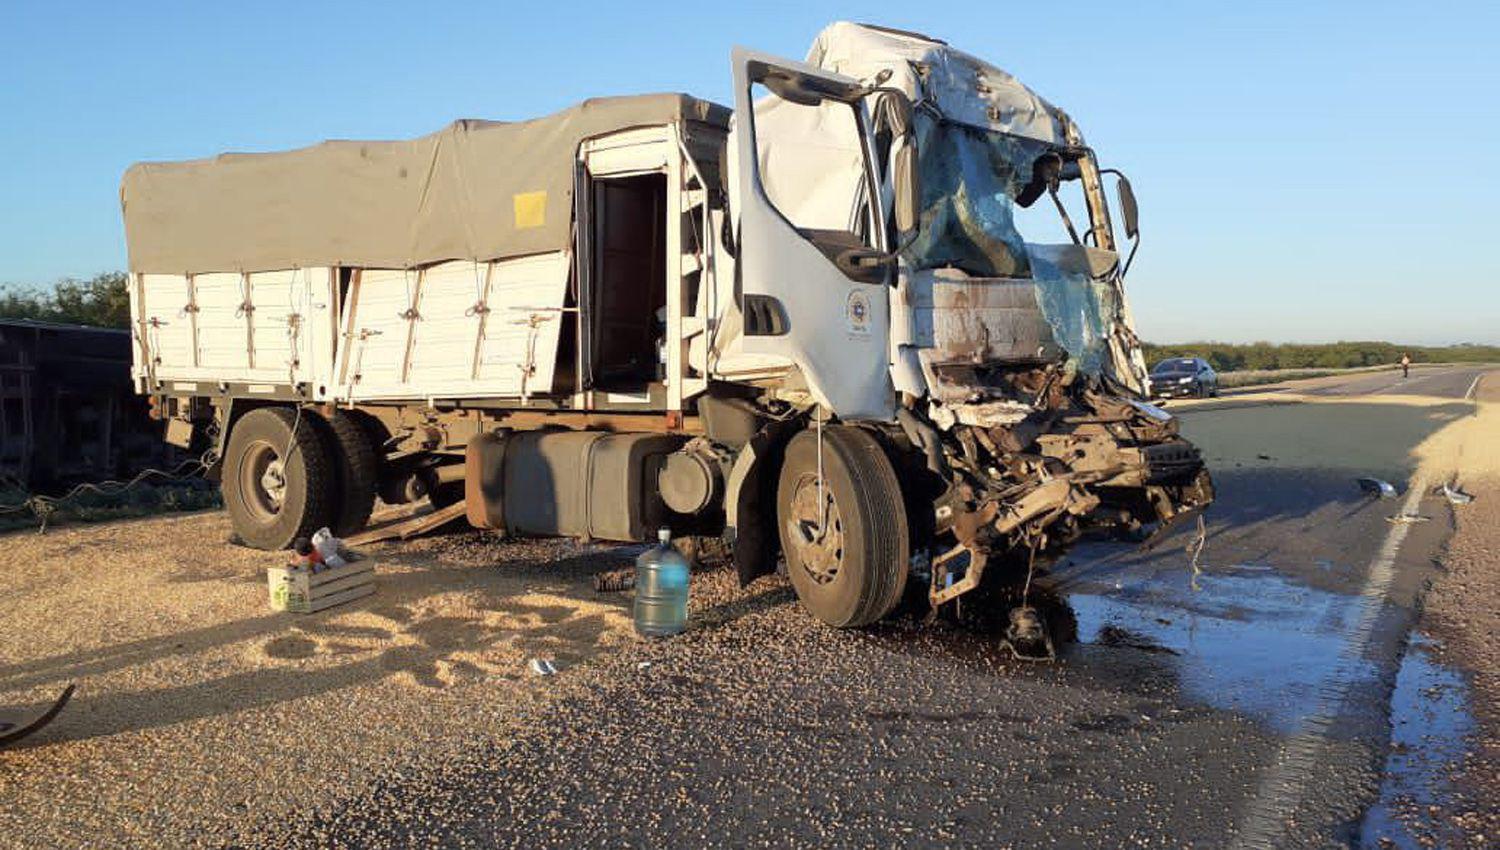 Dramaacutetico- camionero quedoacute atrapado entre los hierros tras brutal choque en la Ruta 34